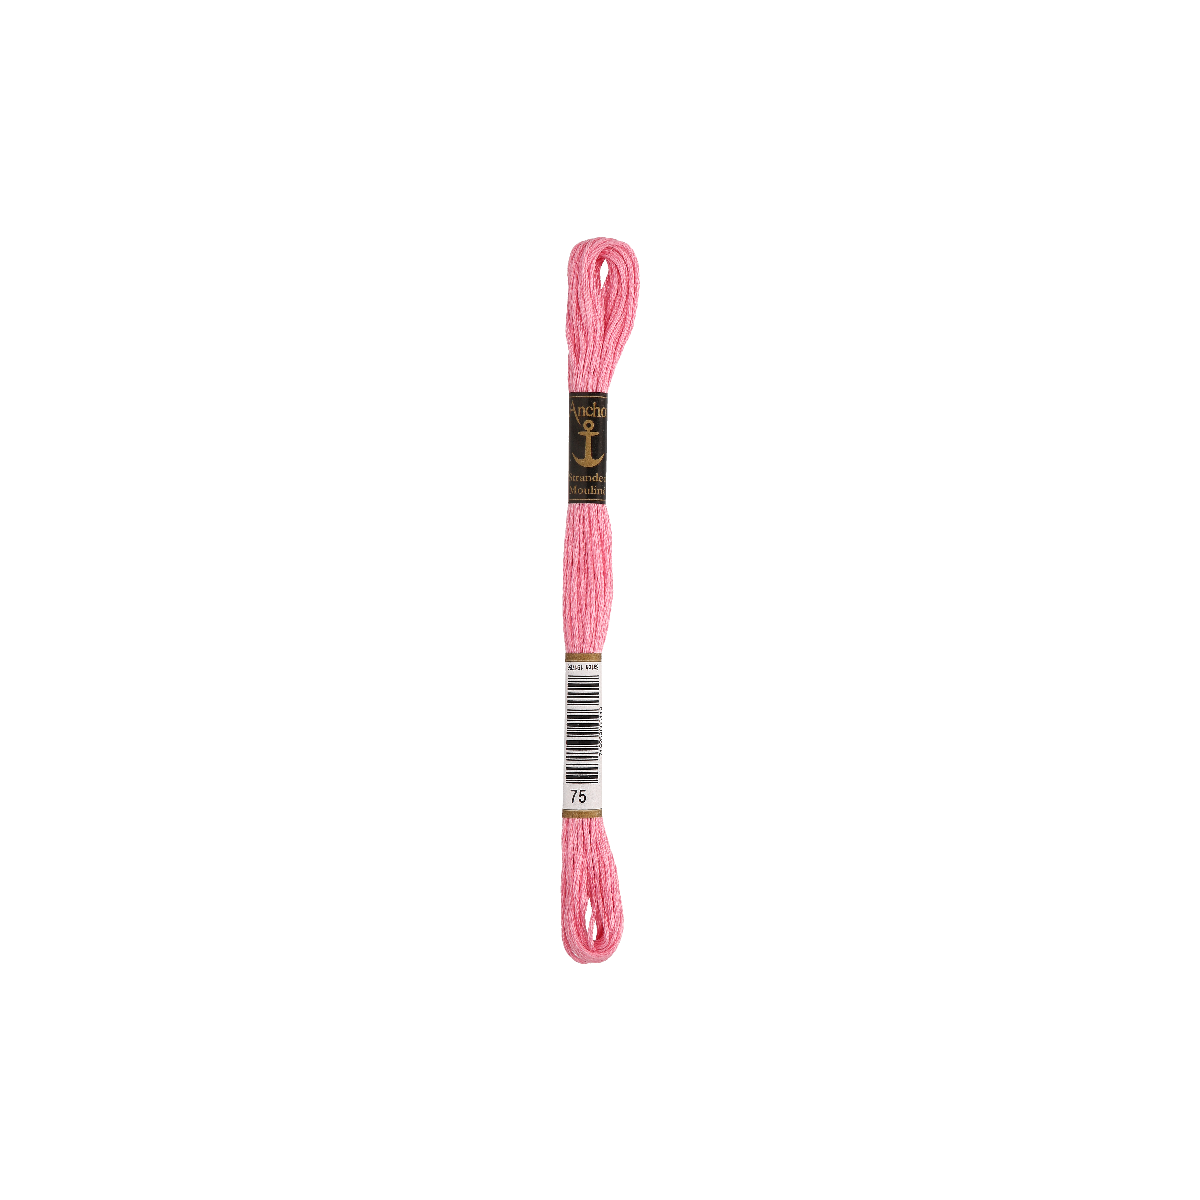 Anchor мулине 8m, жемчужно-розовый, Хлопок,  цвет 75,...